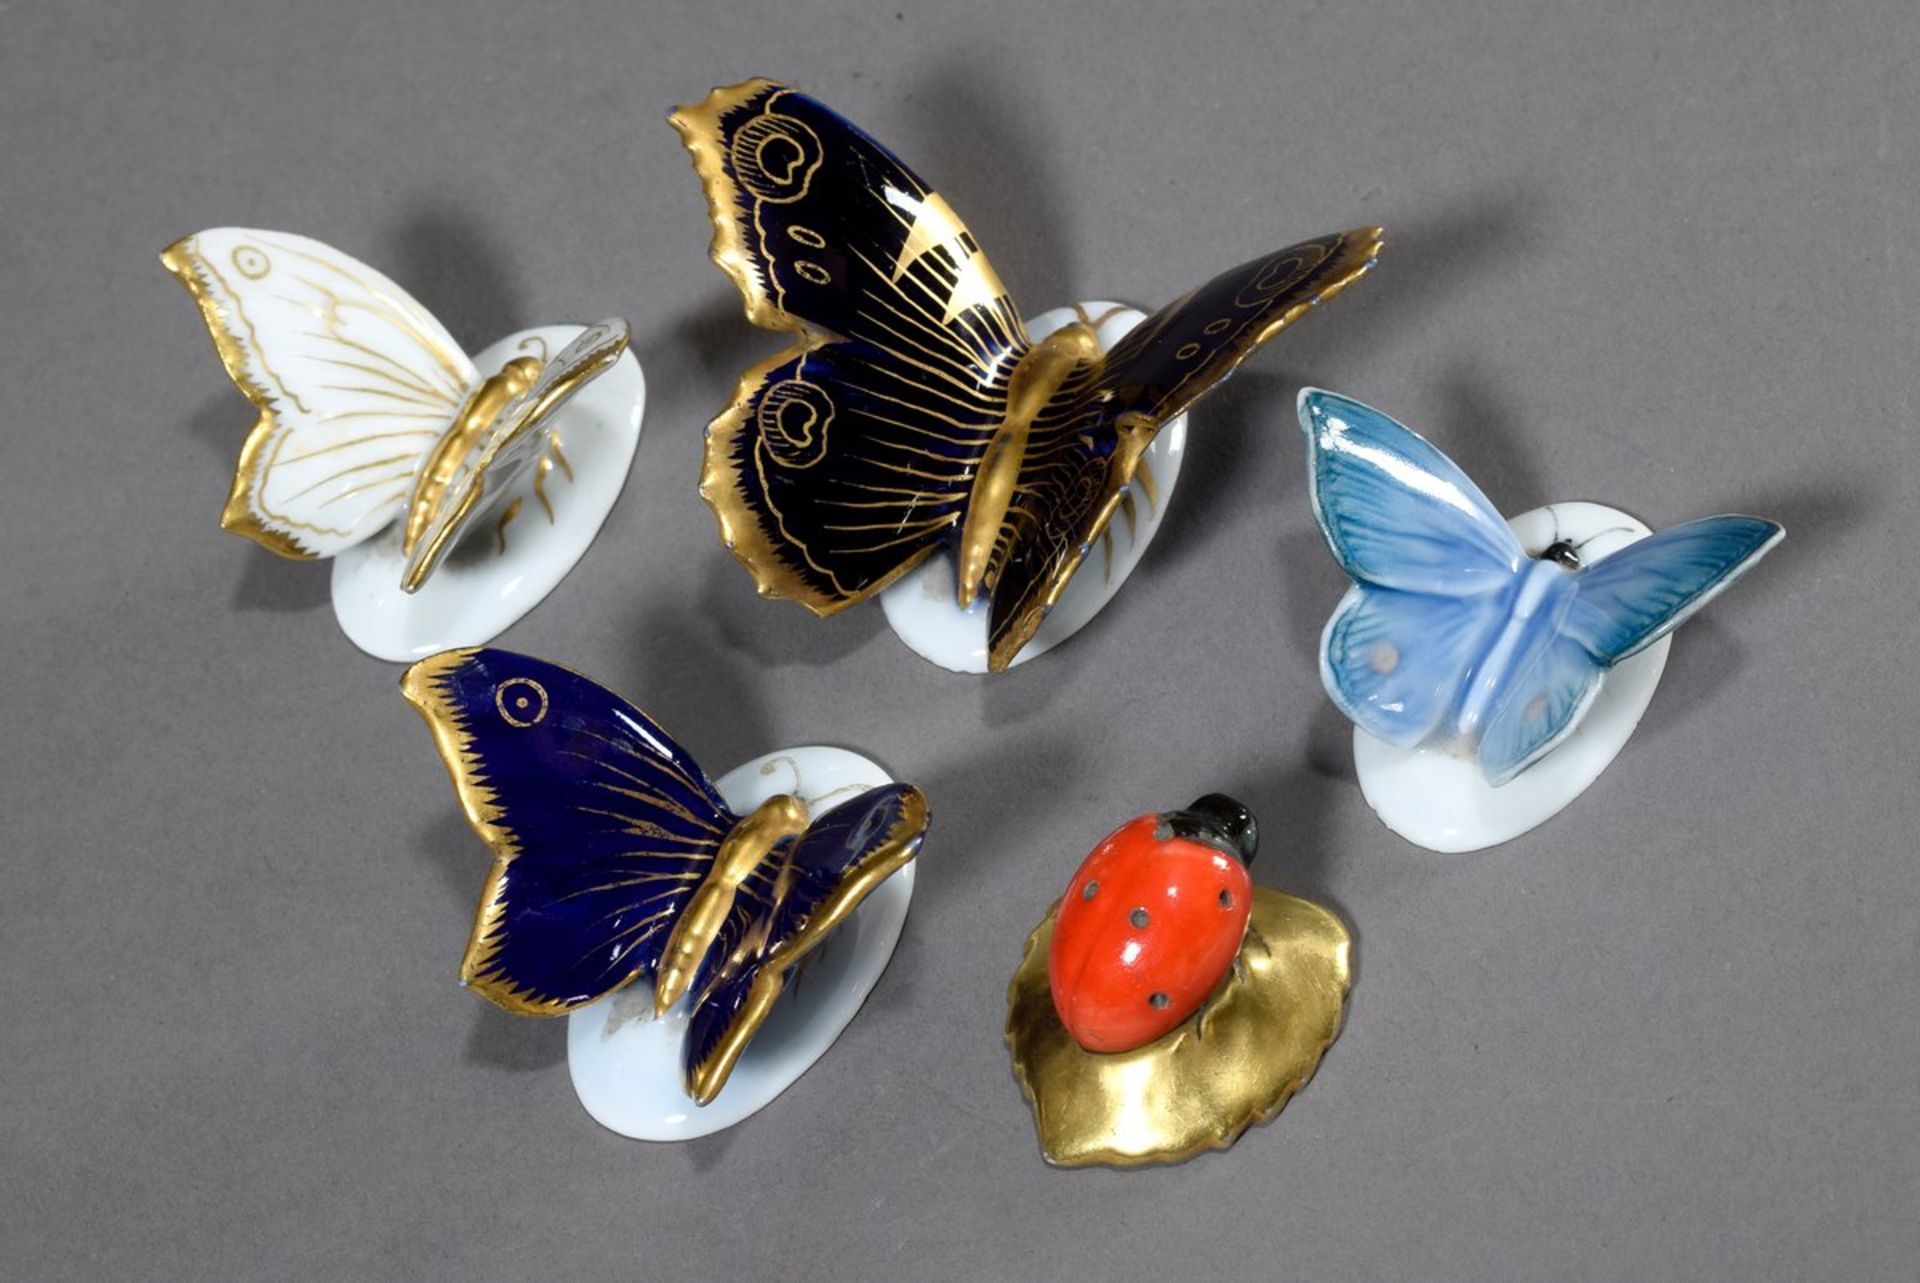 5 Diverse ENS Porzellan Tischdekorationen "Schmetterlinge" und "Marienkäfer", farbig staffiert, - Bild 2 aus 3